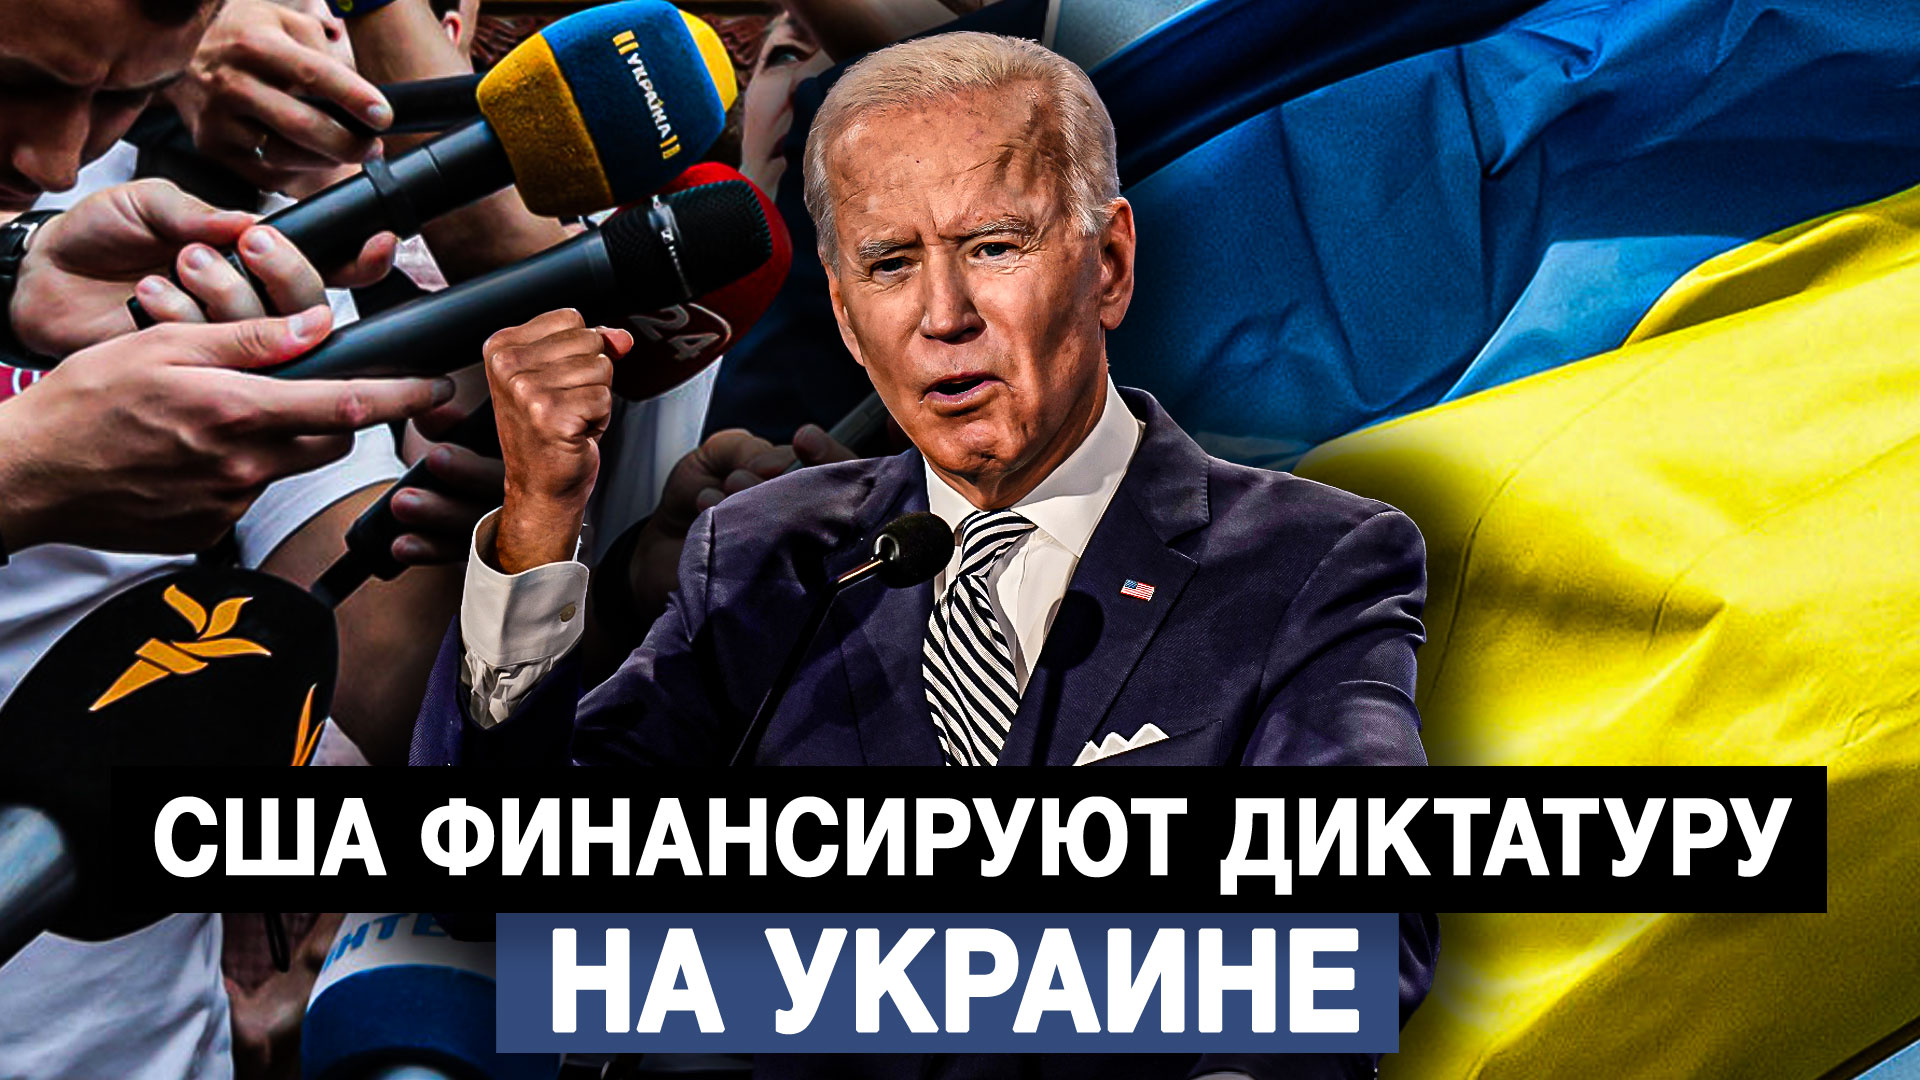 США финансируют диктатуру на Украине